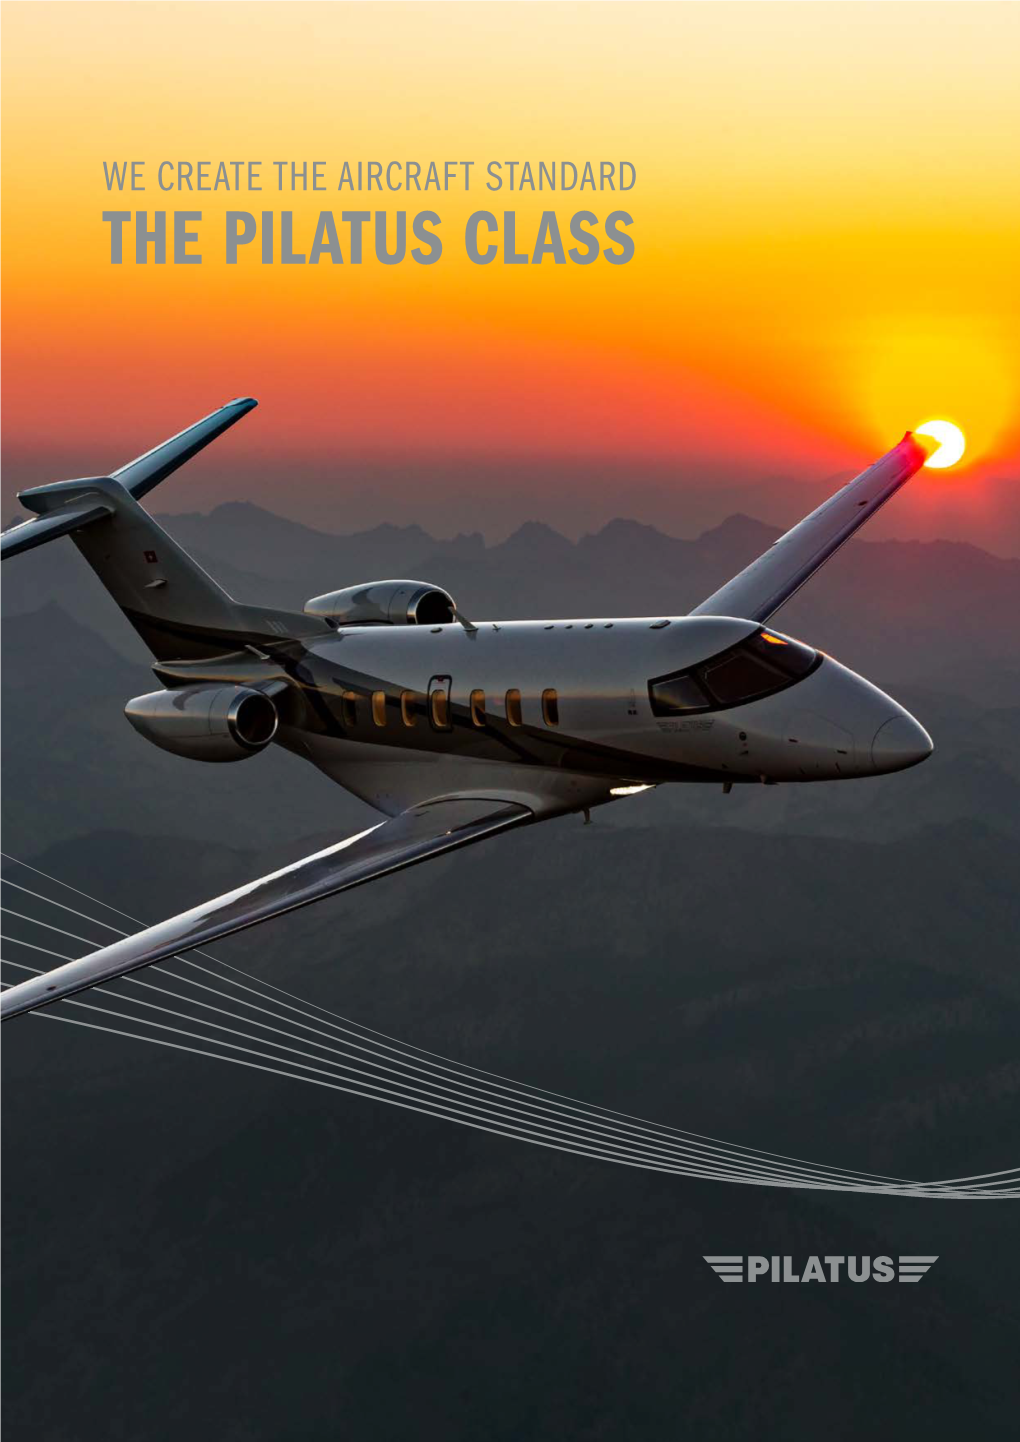 The Pilatus Class Once Pilatus, Always Pilatus